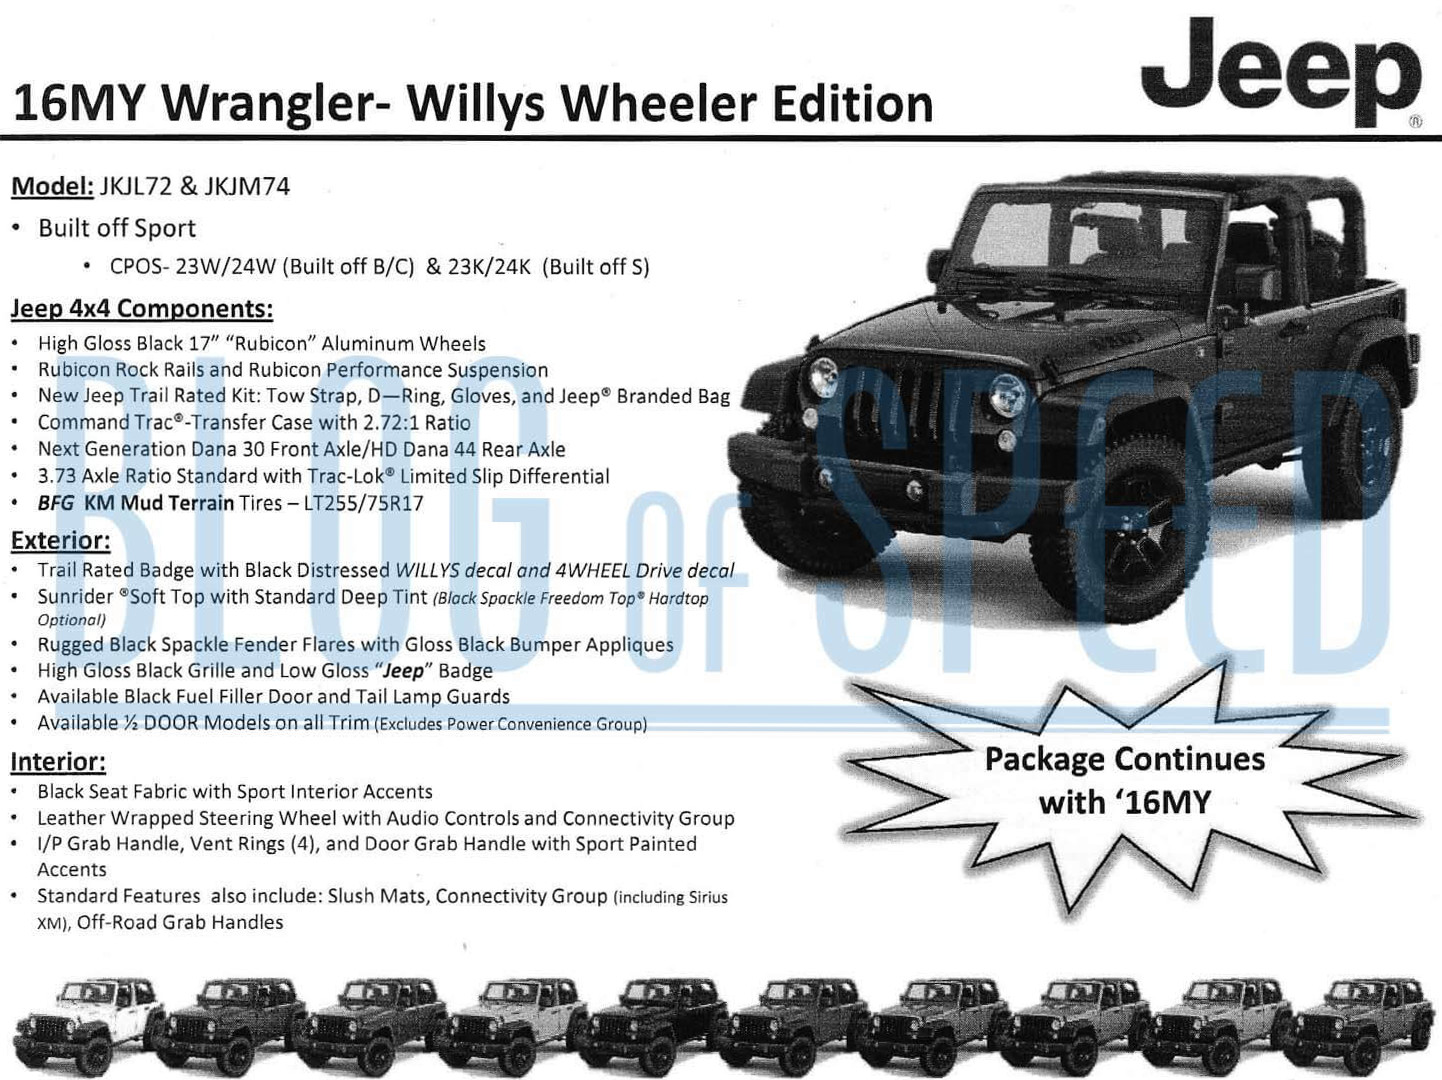 2016 Jeep Wrangler Gets Special Black Bear Edition | Motrolix 2016 Jeep Wrangler 2 Door Towing Capacity